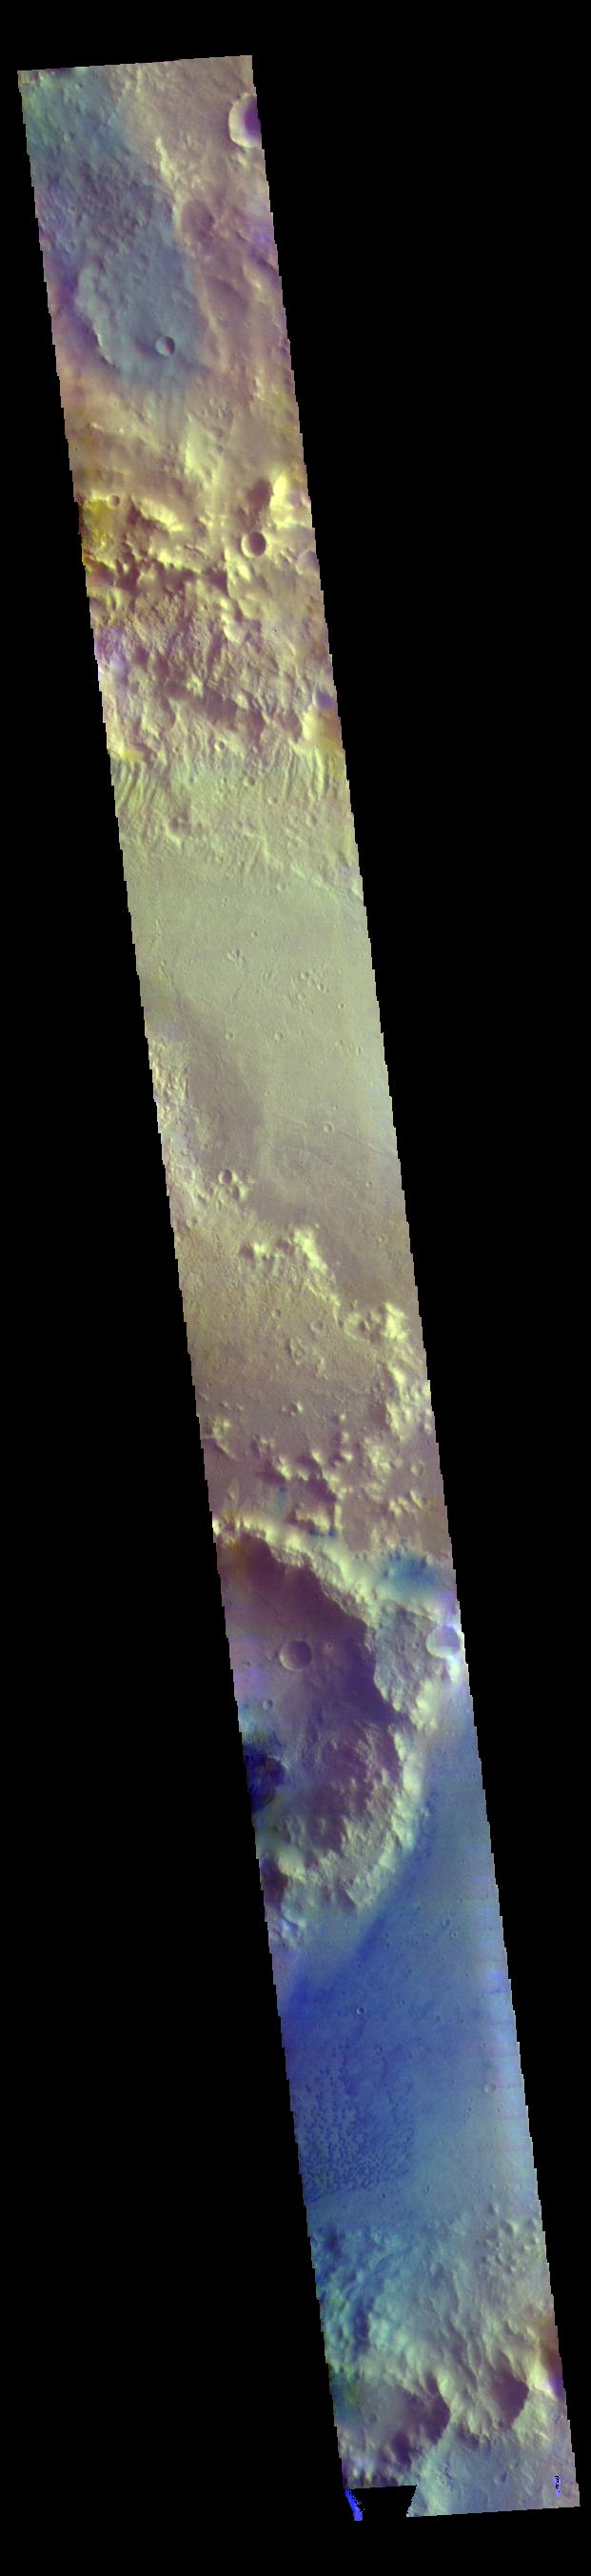 PIA22780: Trouvelot Crater - False Color